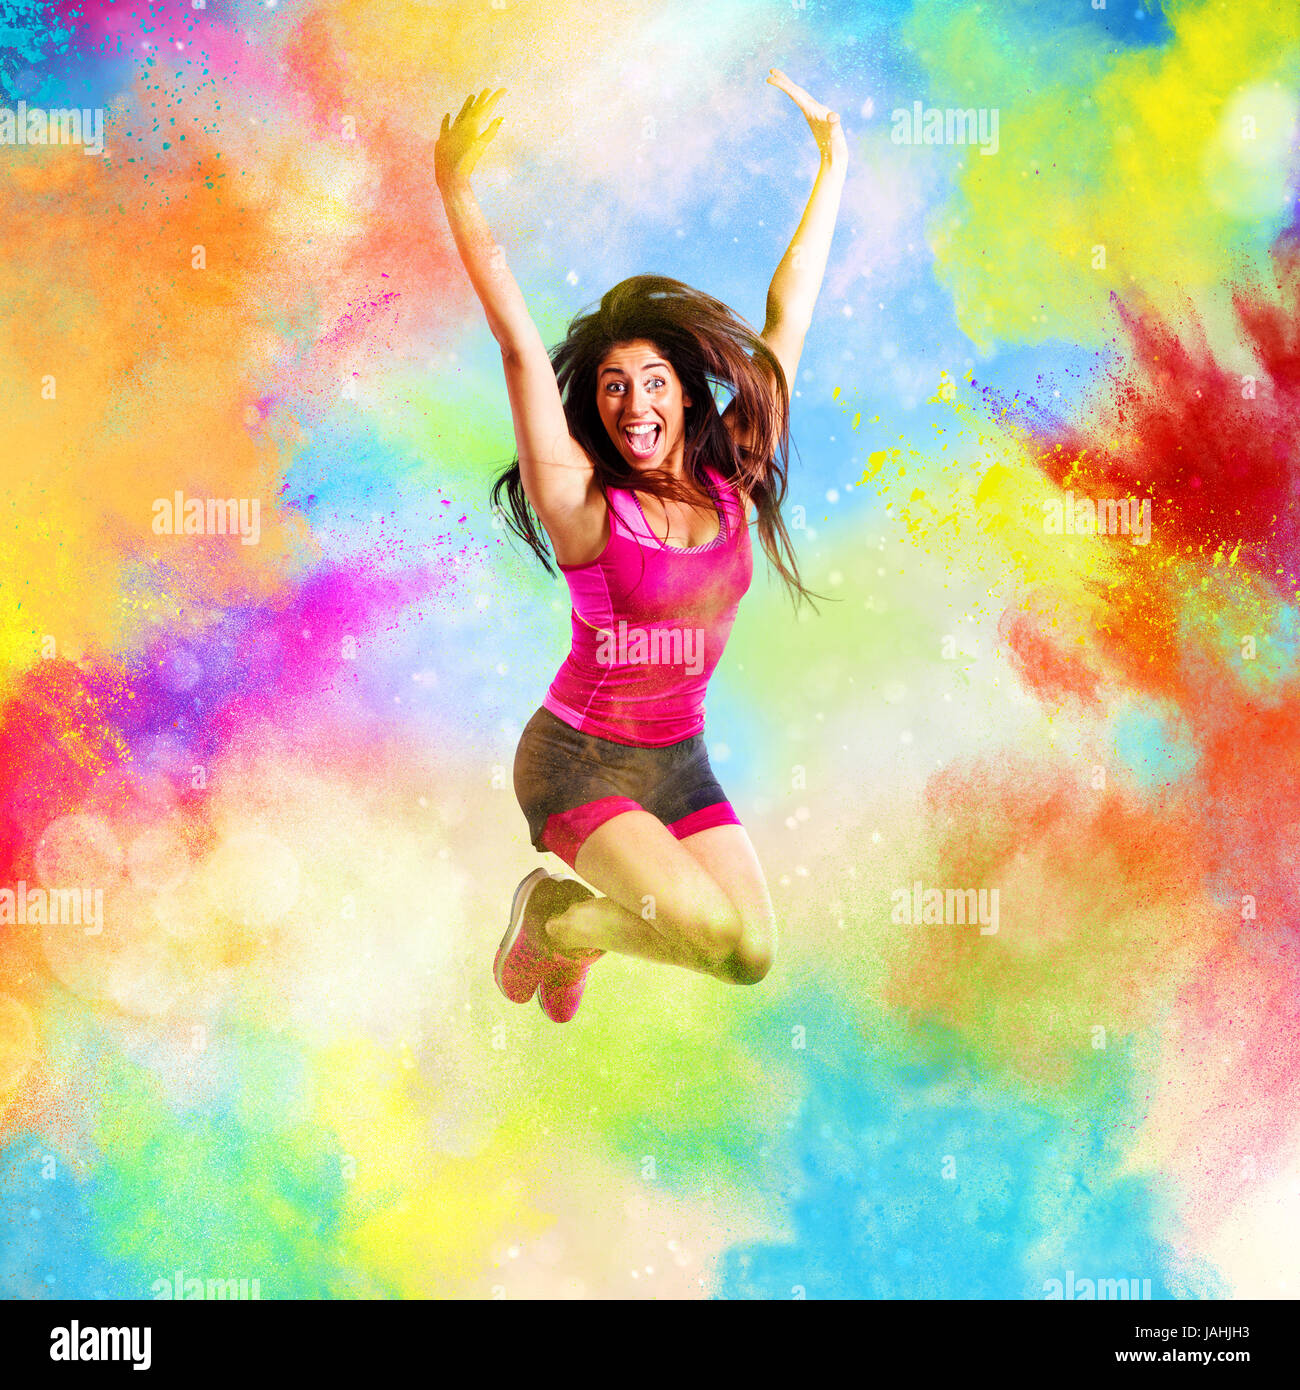 Professeur de fitness saute sur couleurs d'été Banque D'Images